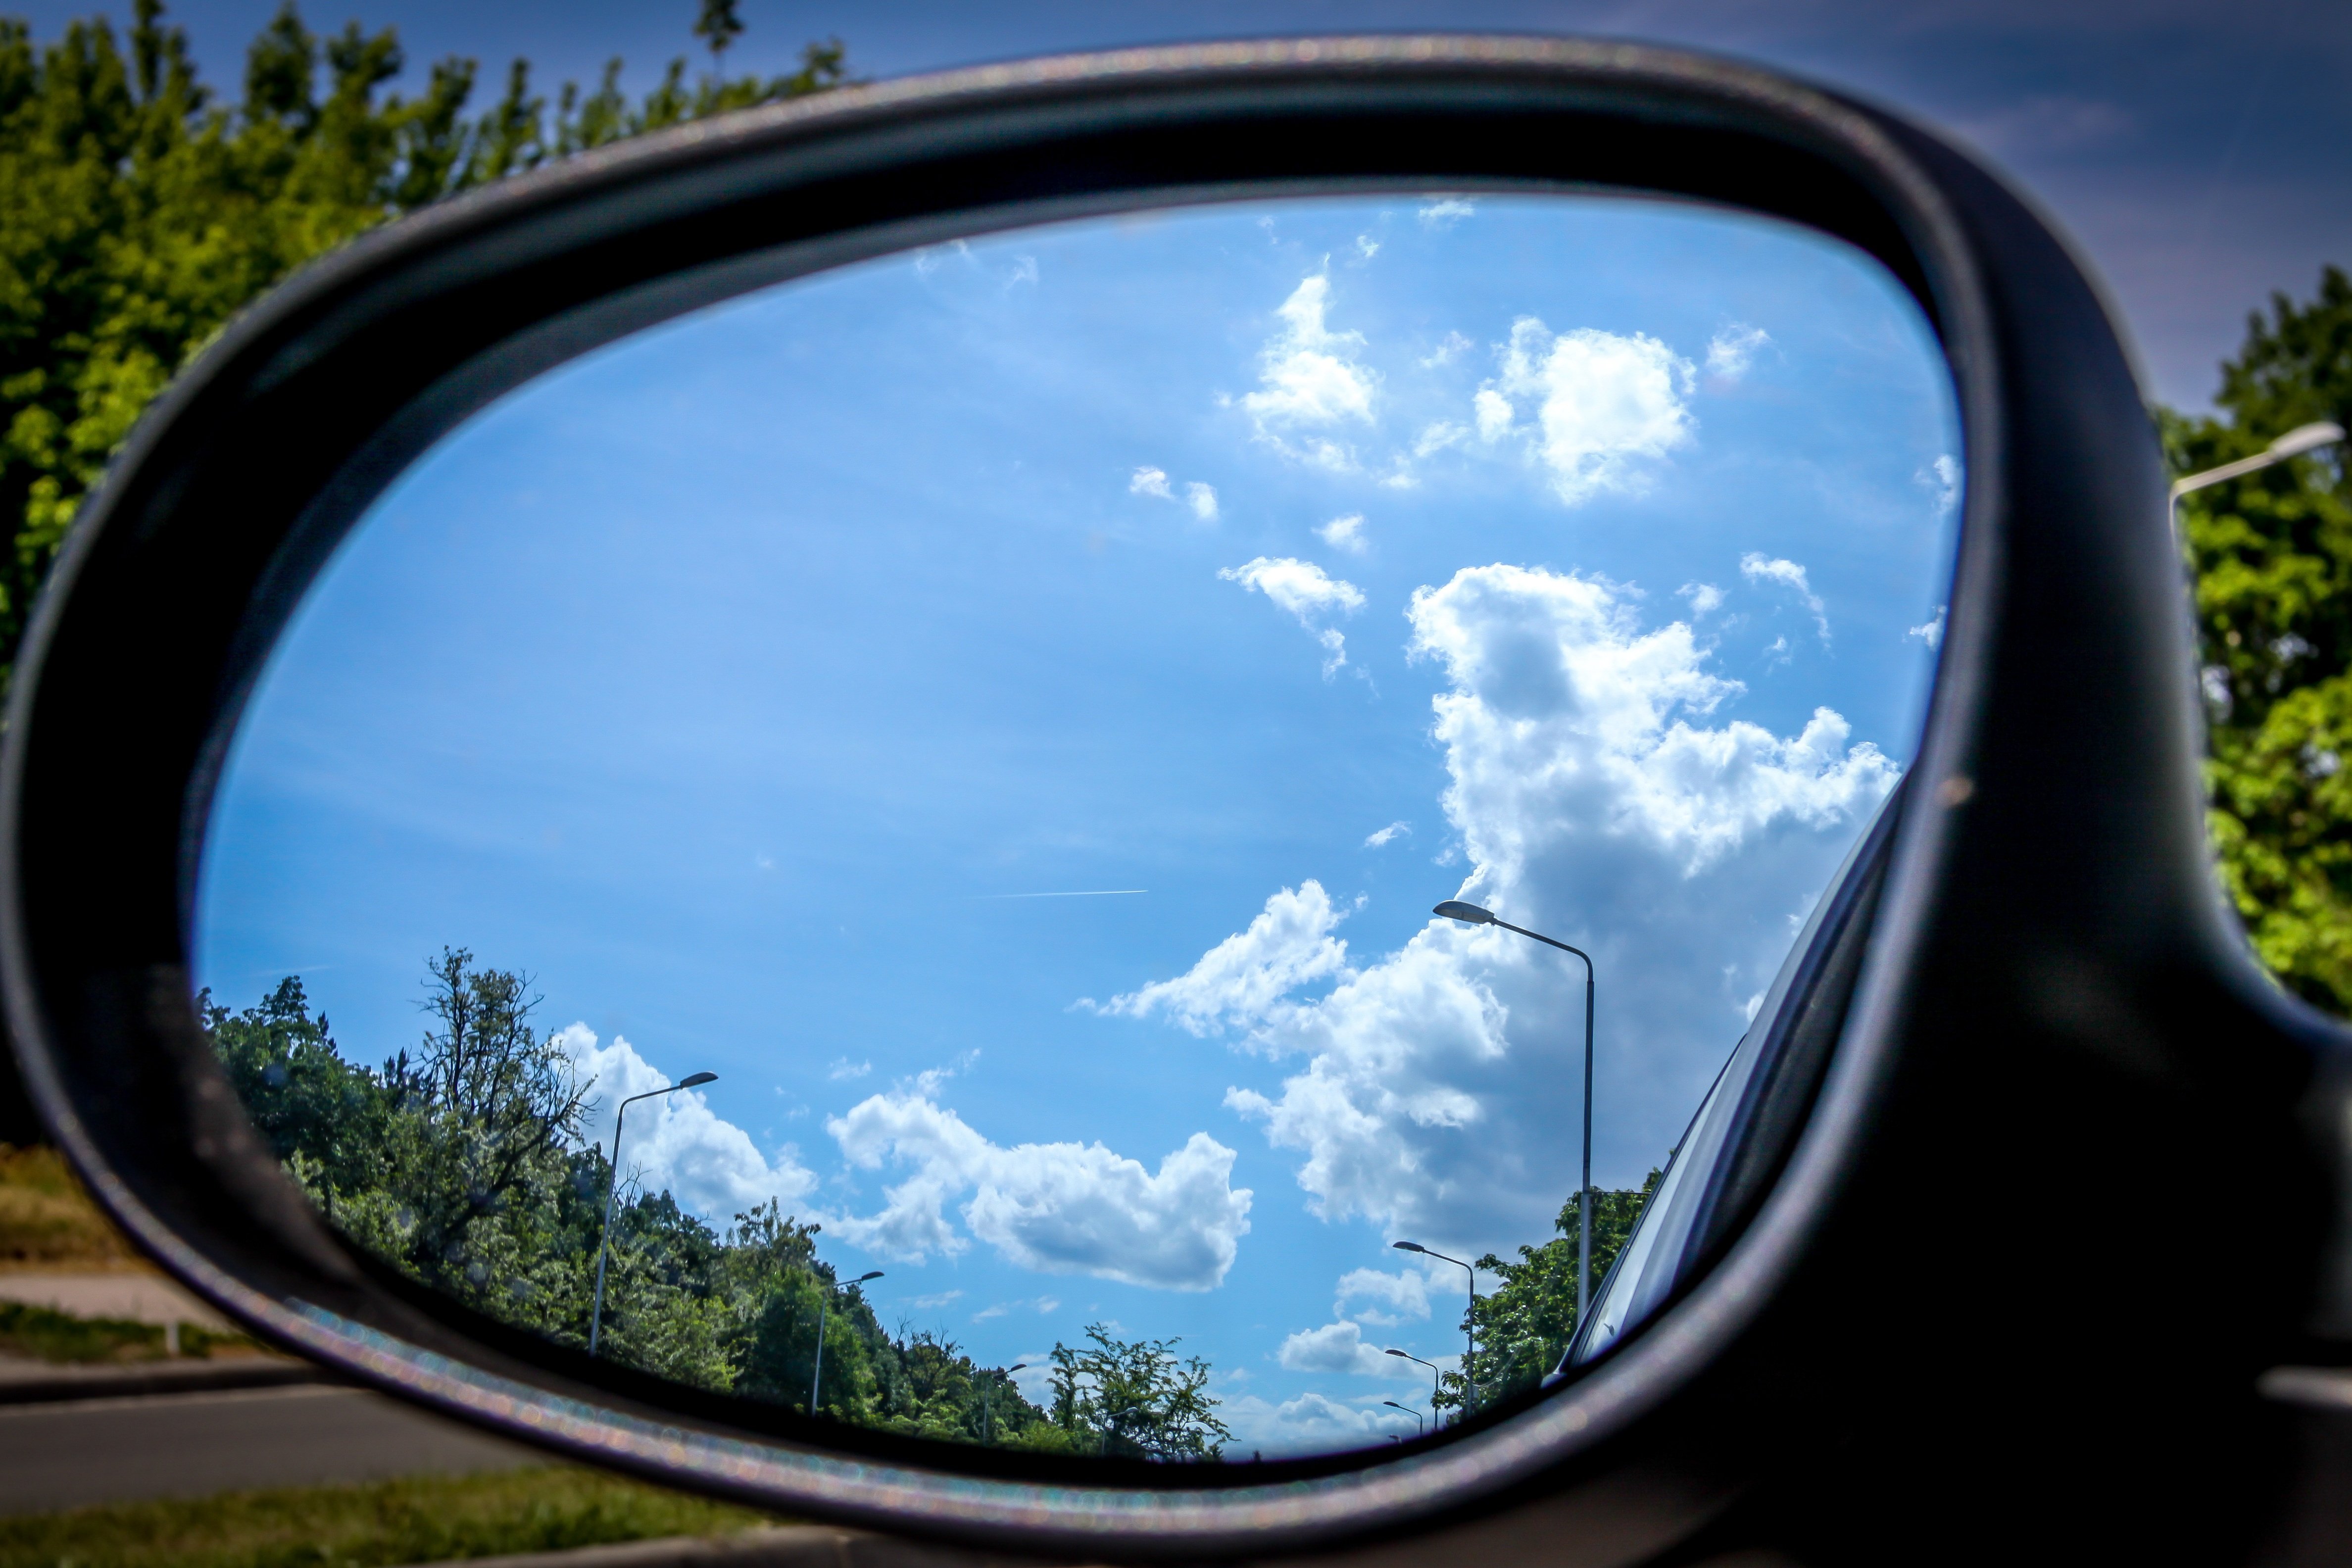 Отражение тема дня. Окно машины. Отражение в зеркале. Зеркало автомобиля. Отражение в зеркале машины.